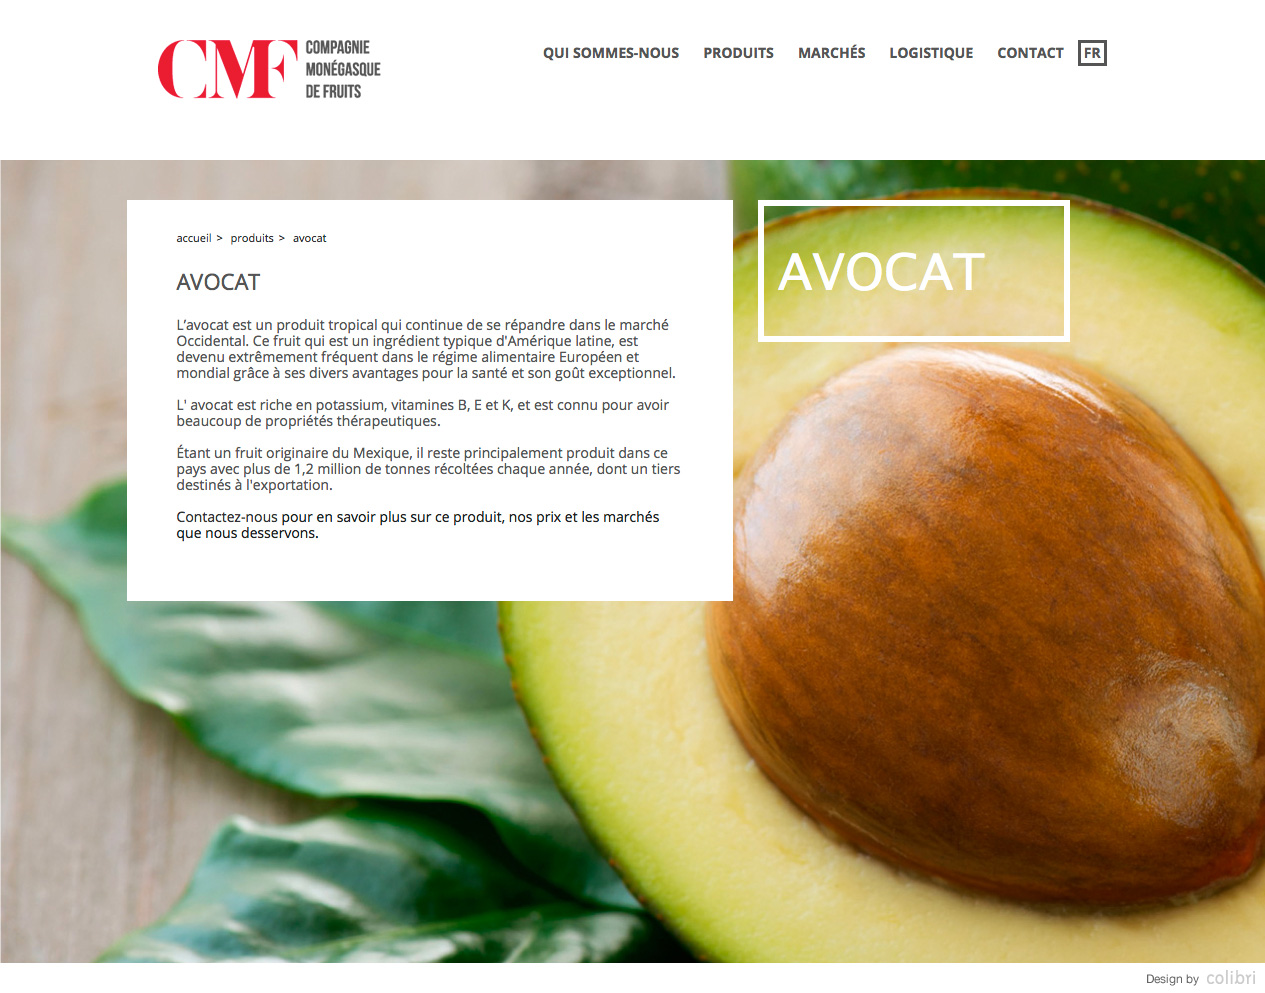 Compagnie monégasque de fruits - Compagnie monégasque de fruits - Création du site internet cmf.mc